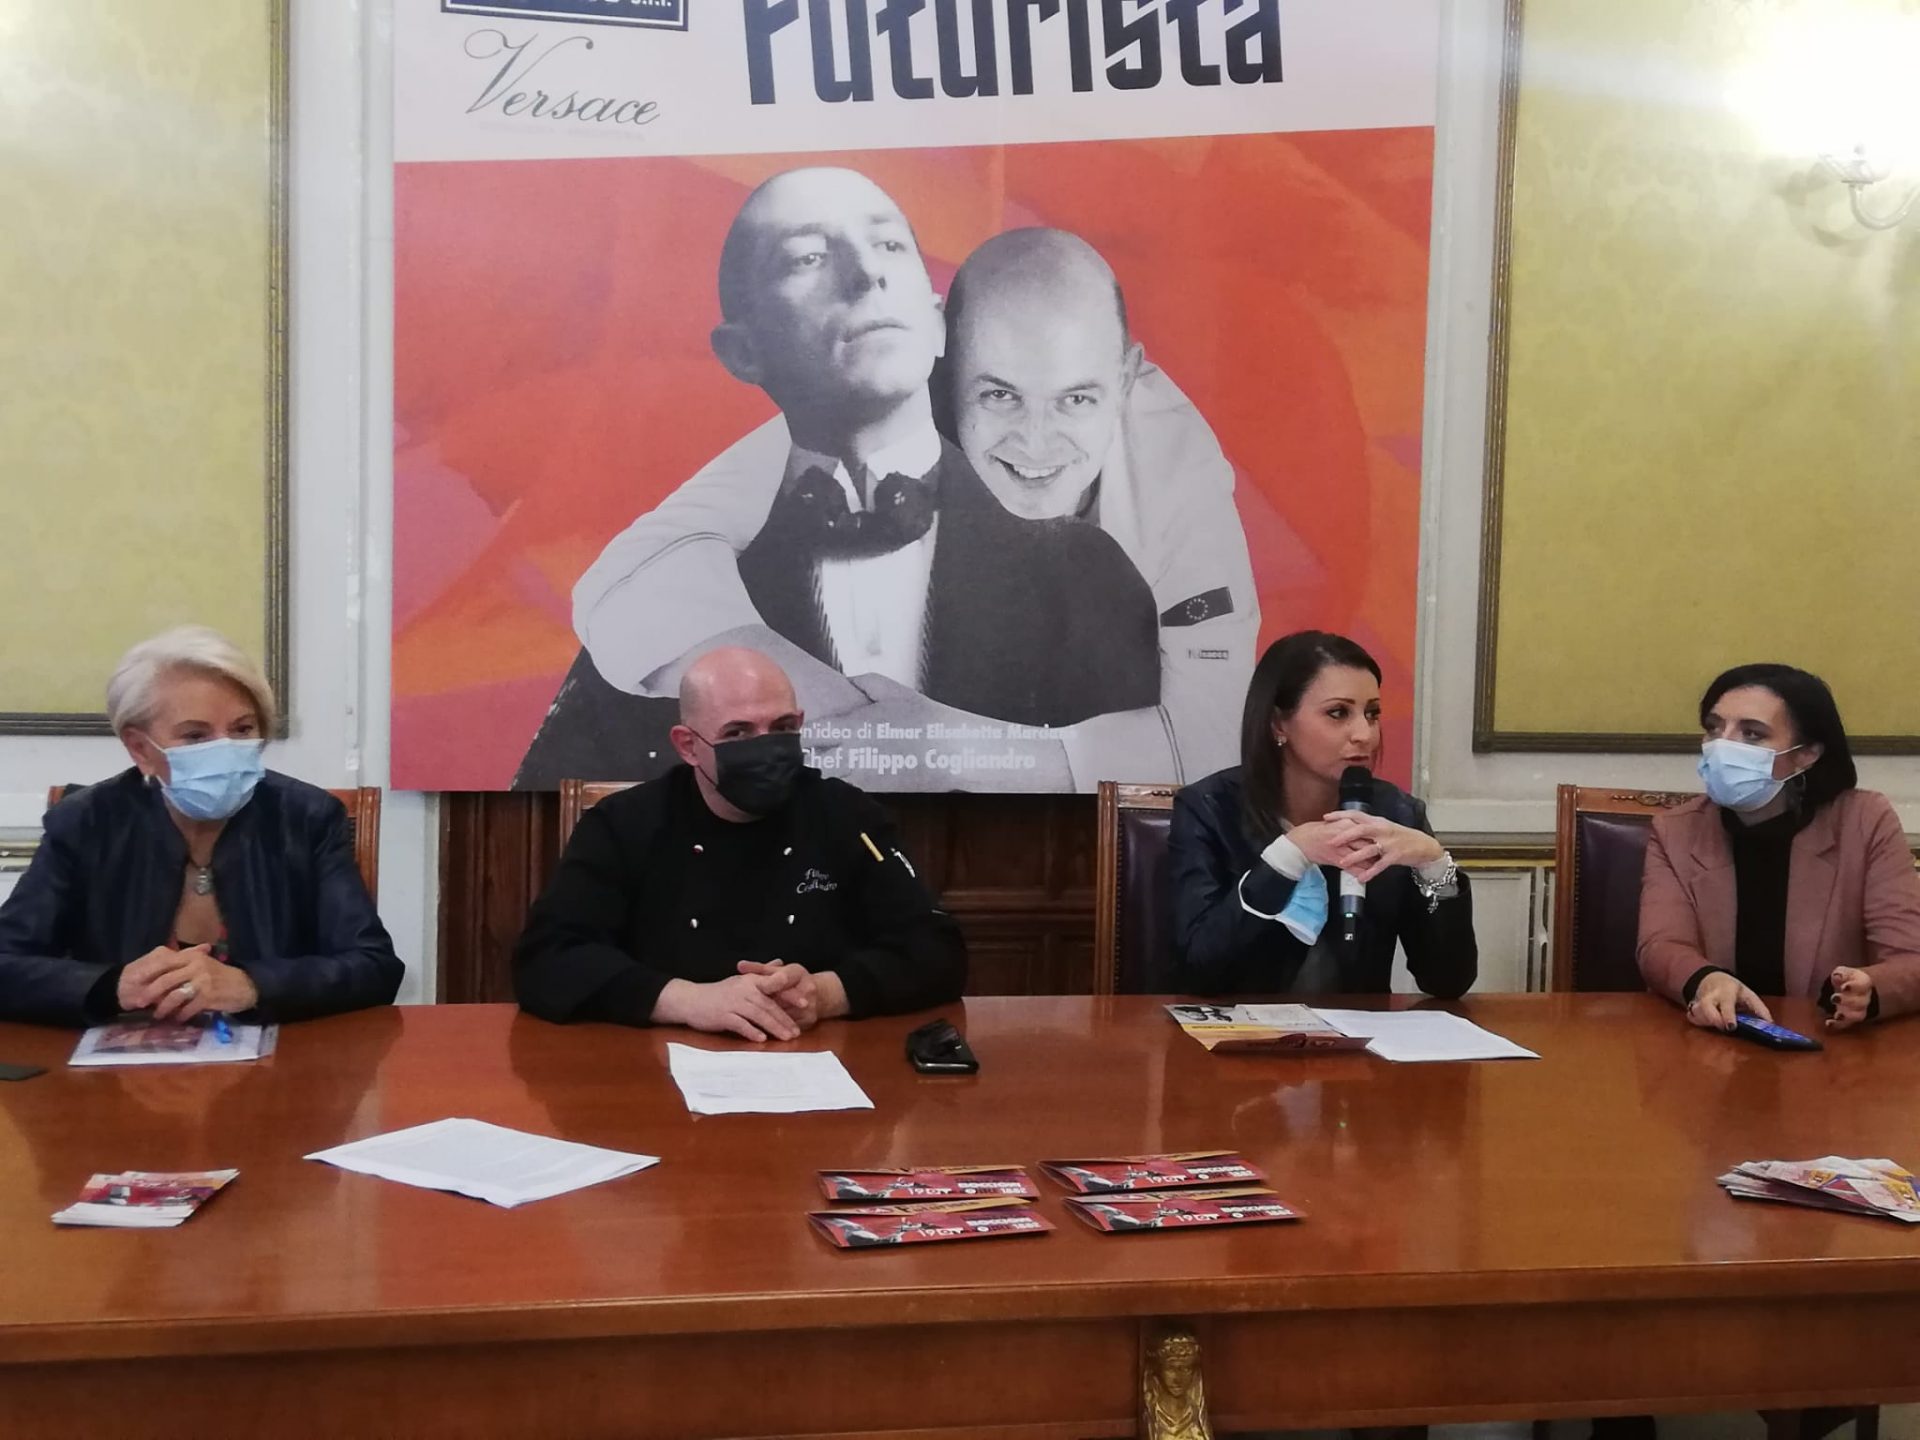 Umberto Boccioni rivive ne “L’A cena futurista” di Elmar e chef Cogliandro